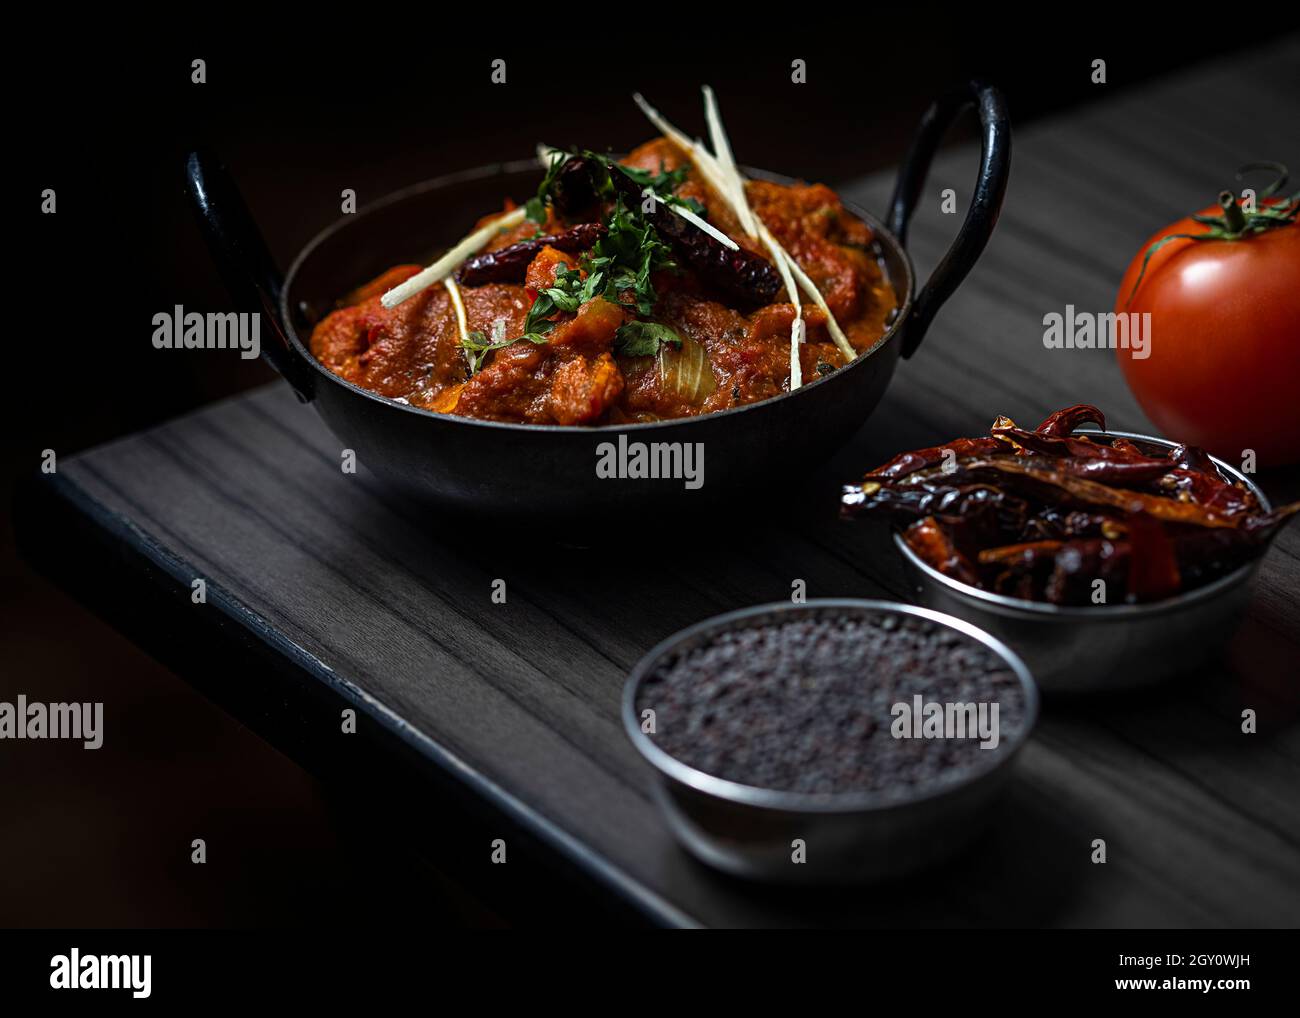 La composition du plat indien avec des épices sur la table. Banque D'Images